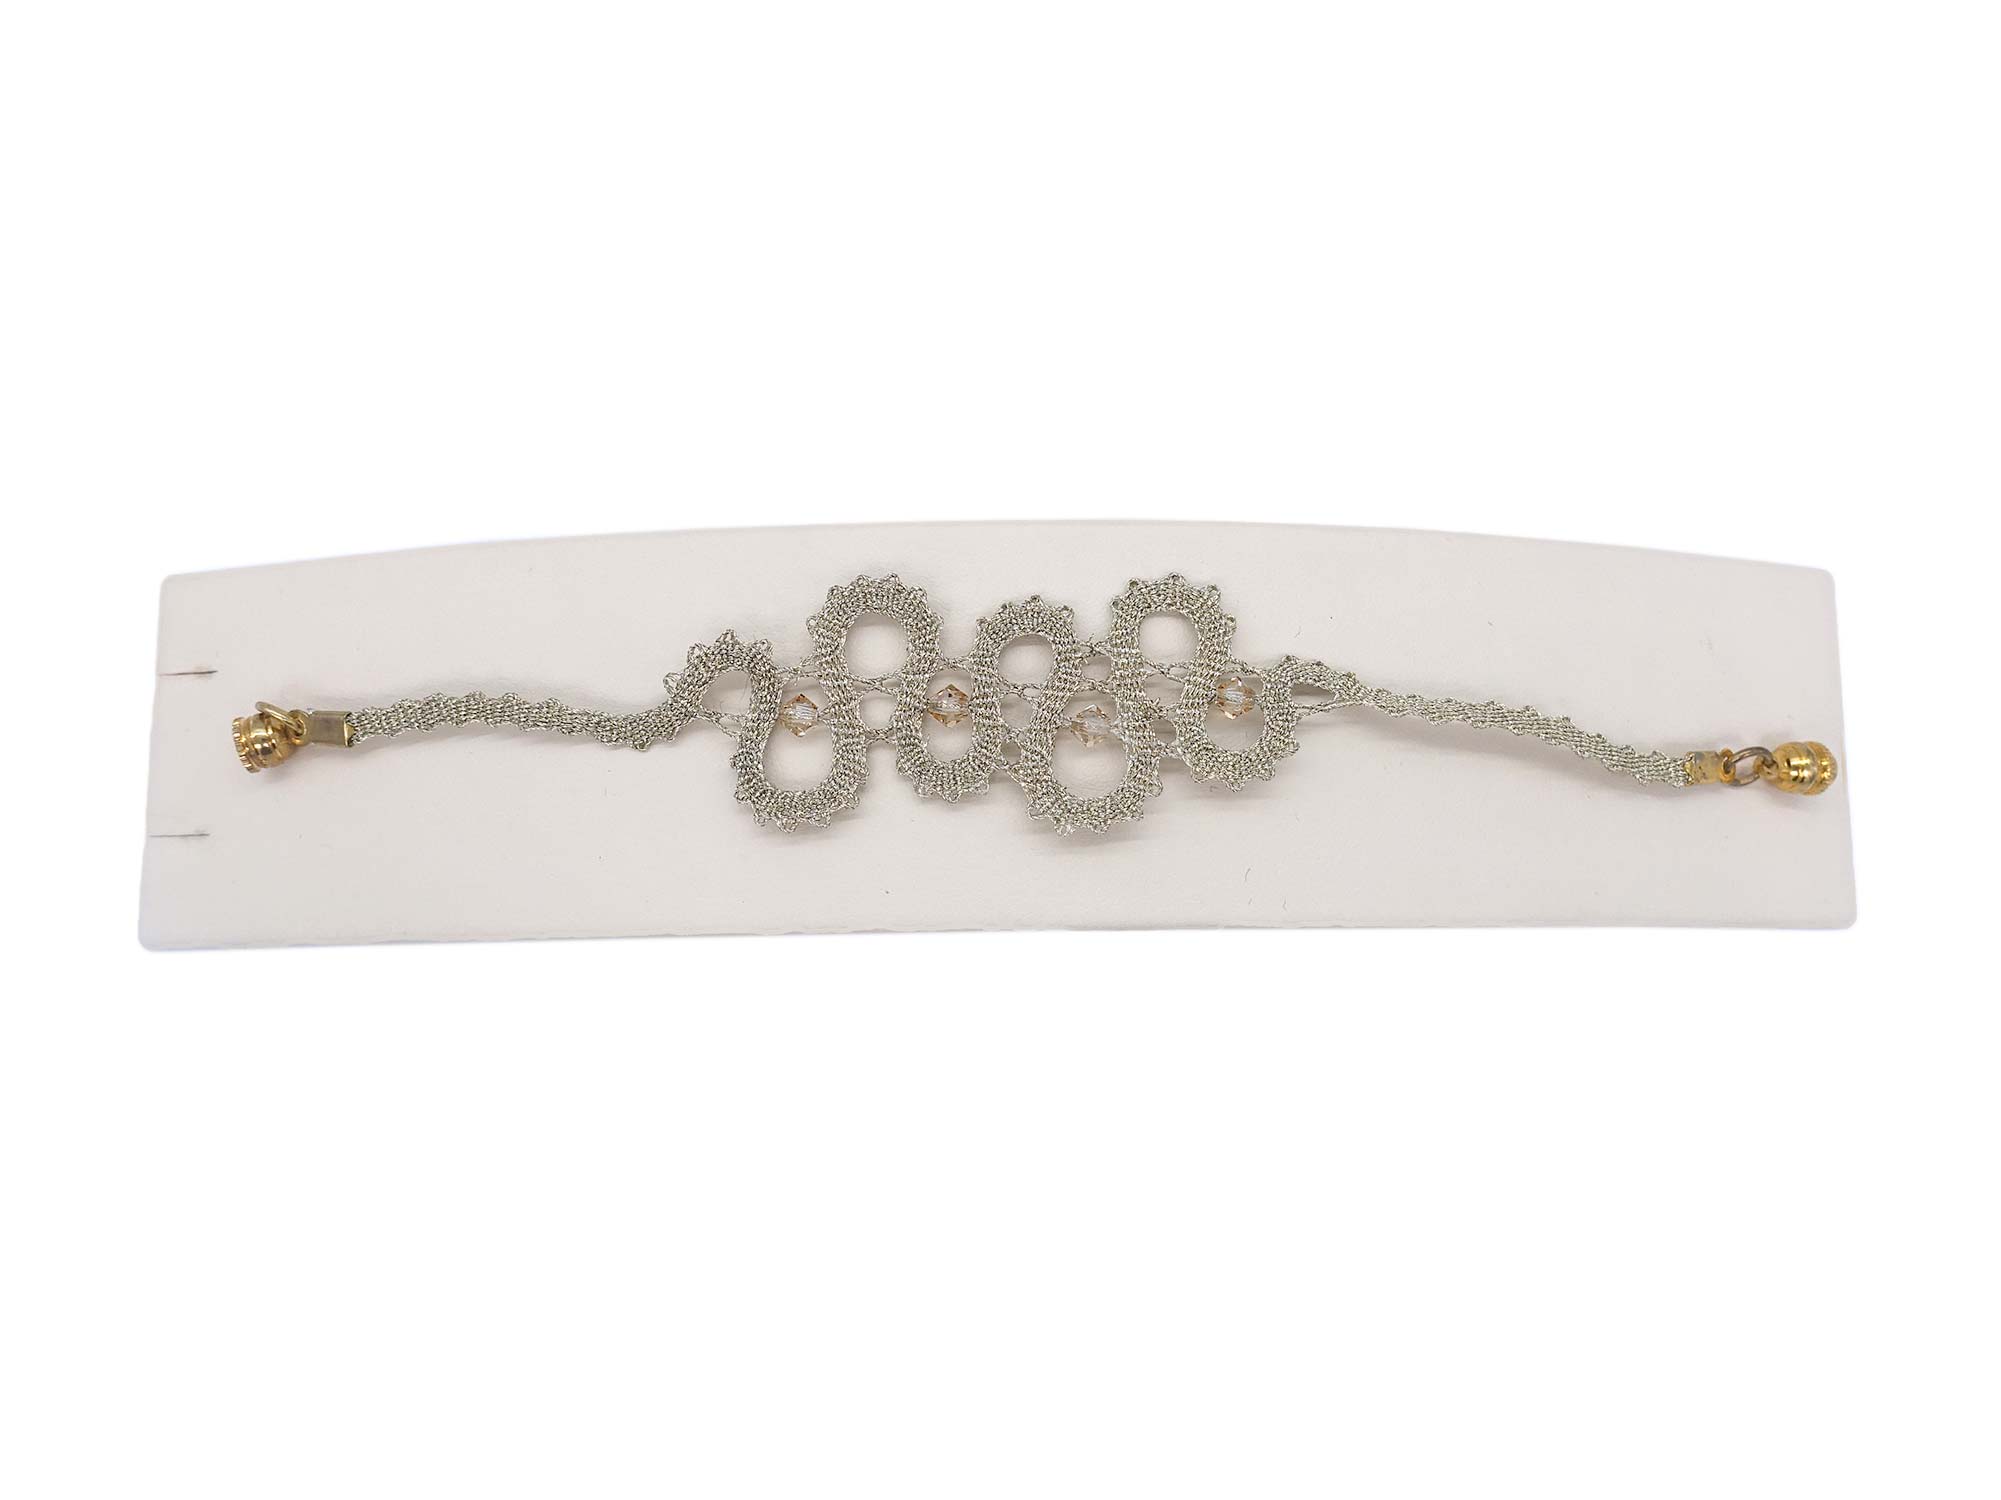 Klekljana čipka nakit zapestnica Idrija tradicija s posluhom Slovenija Etno galerija Skrina